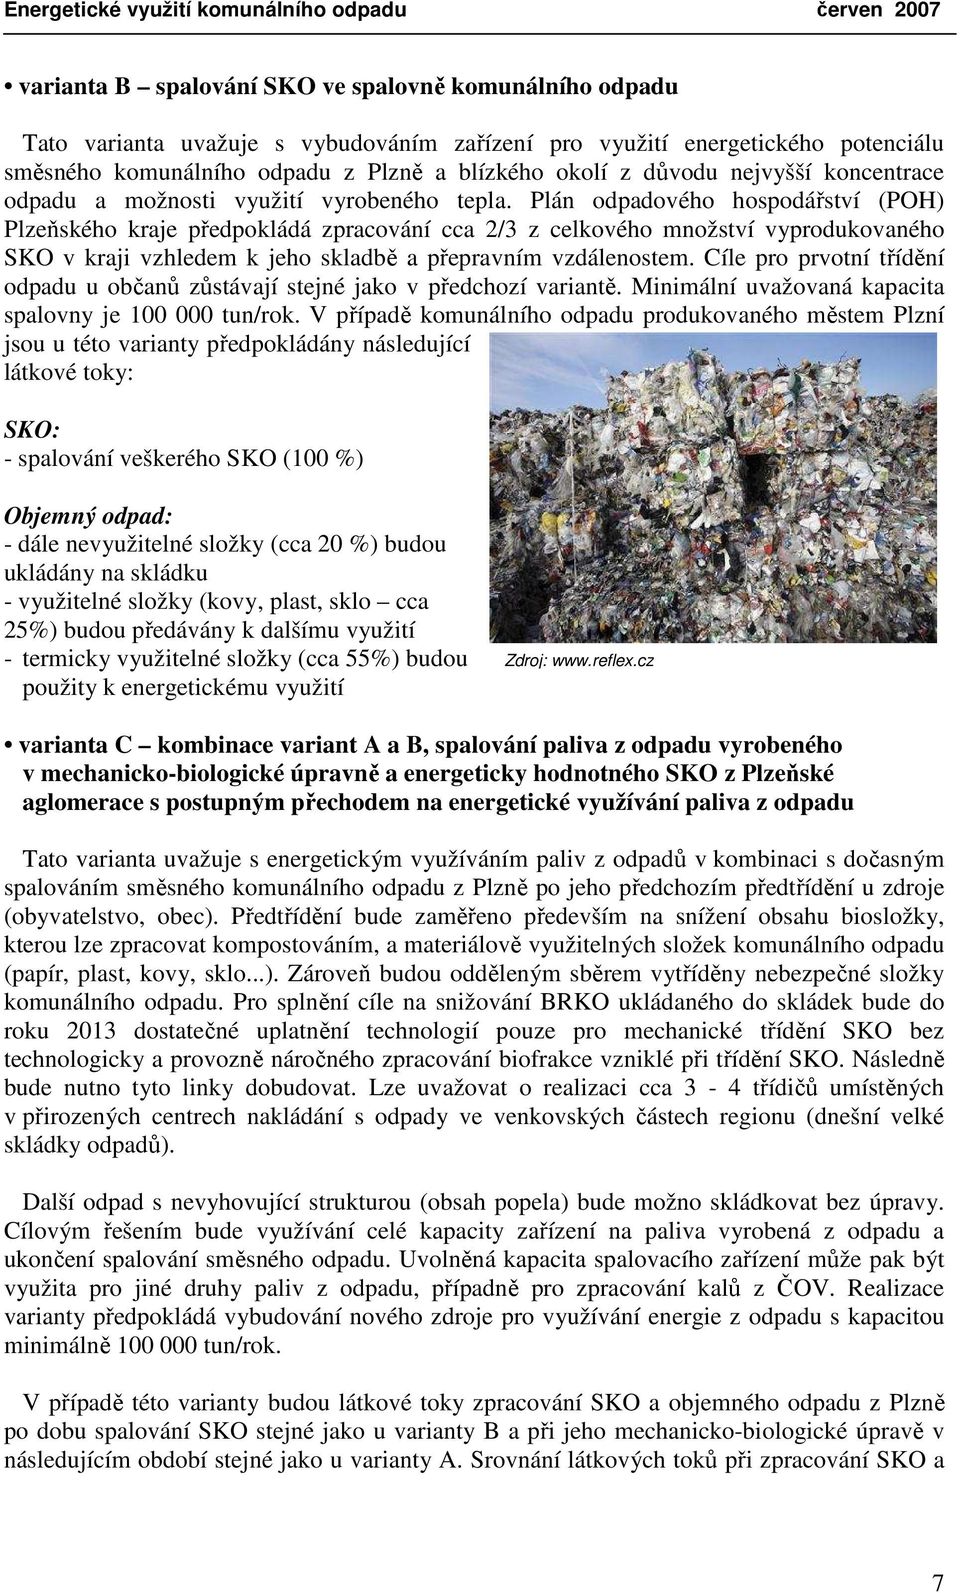 Plán odpadového hospodářství (POH) Plzeňského kraje předpokládá zpracování cca 2/3 z celkového množství vyprodukovaného SKO v kraji vzhledem k jeho skladbě a přepravním vzdálenostem.